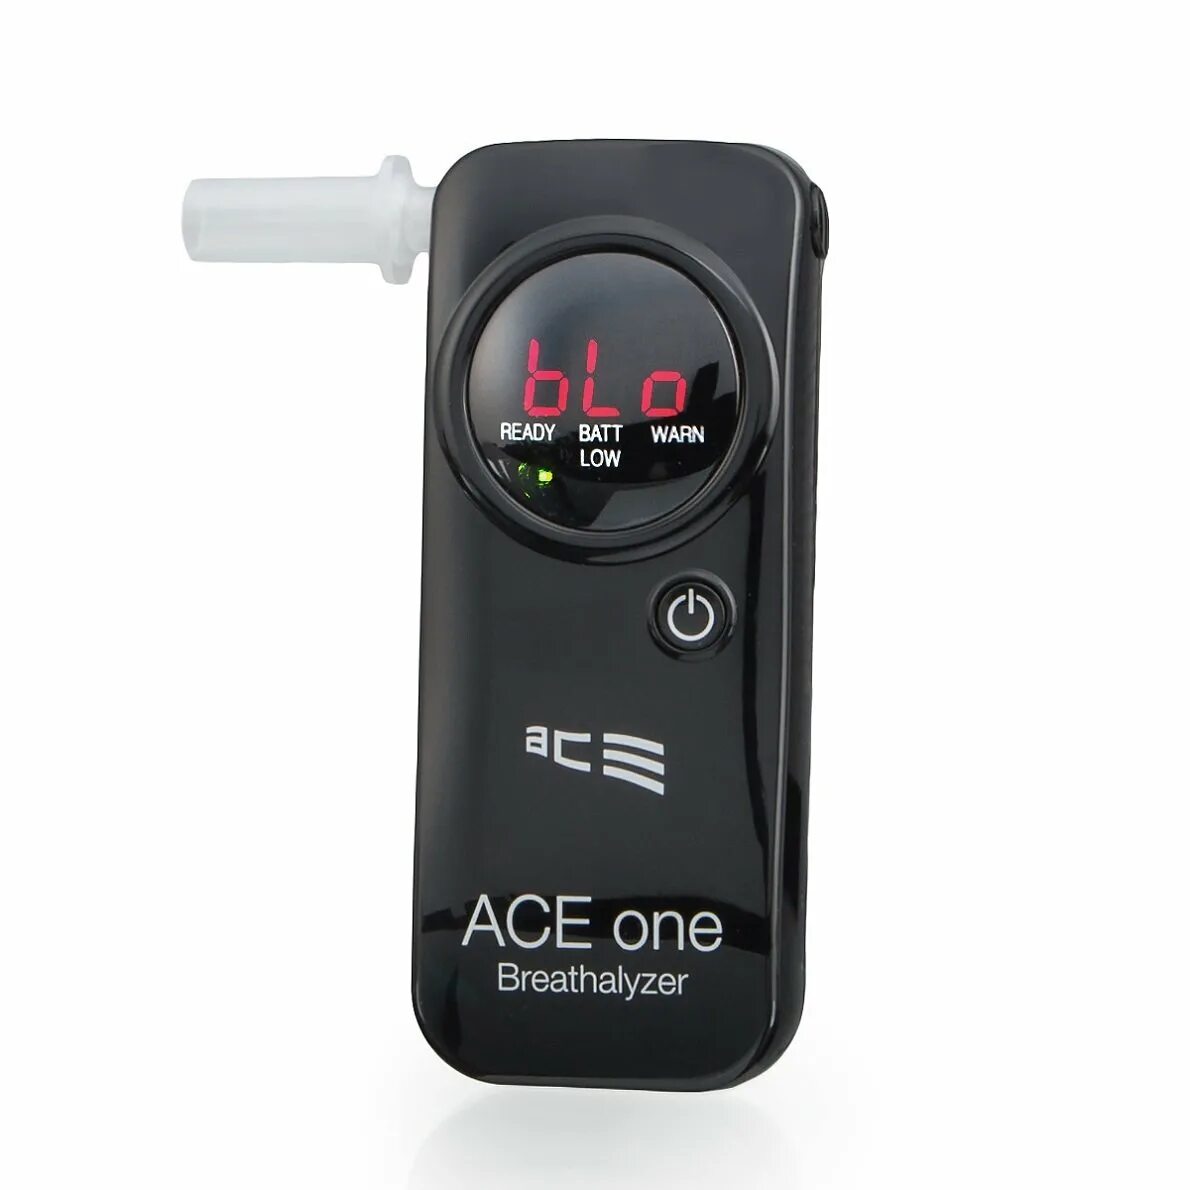 Ace one. Ace instruments, Korea. Ace pro телефон